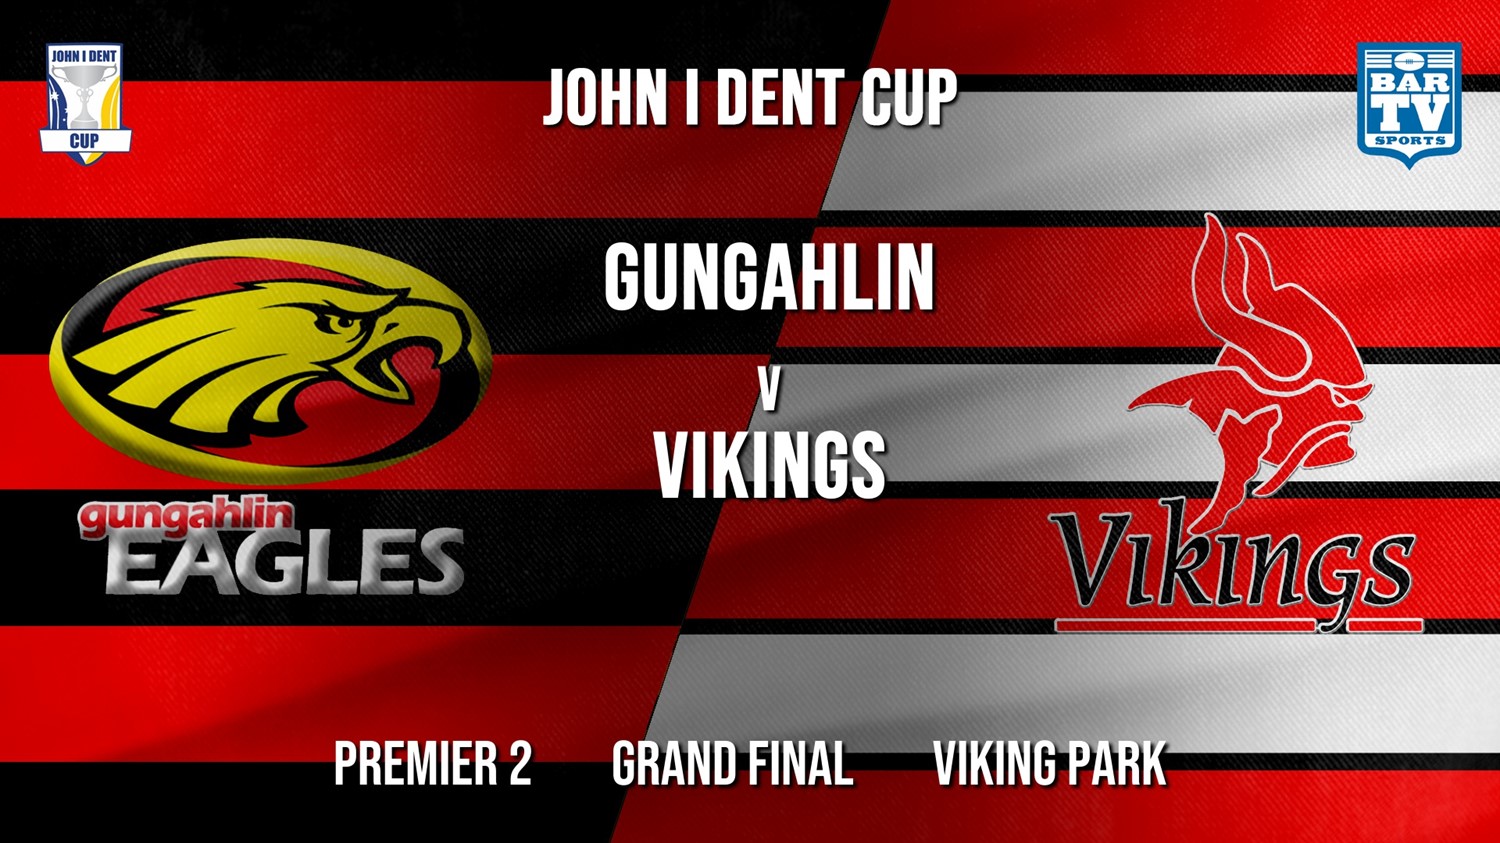 John I Dent Grand Final - Premier 2 - Gungahlin Eagles v Tuggeranong Vikings Minigame Slate Image